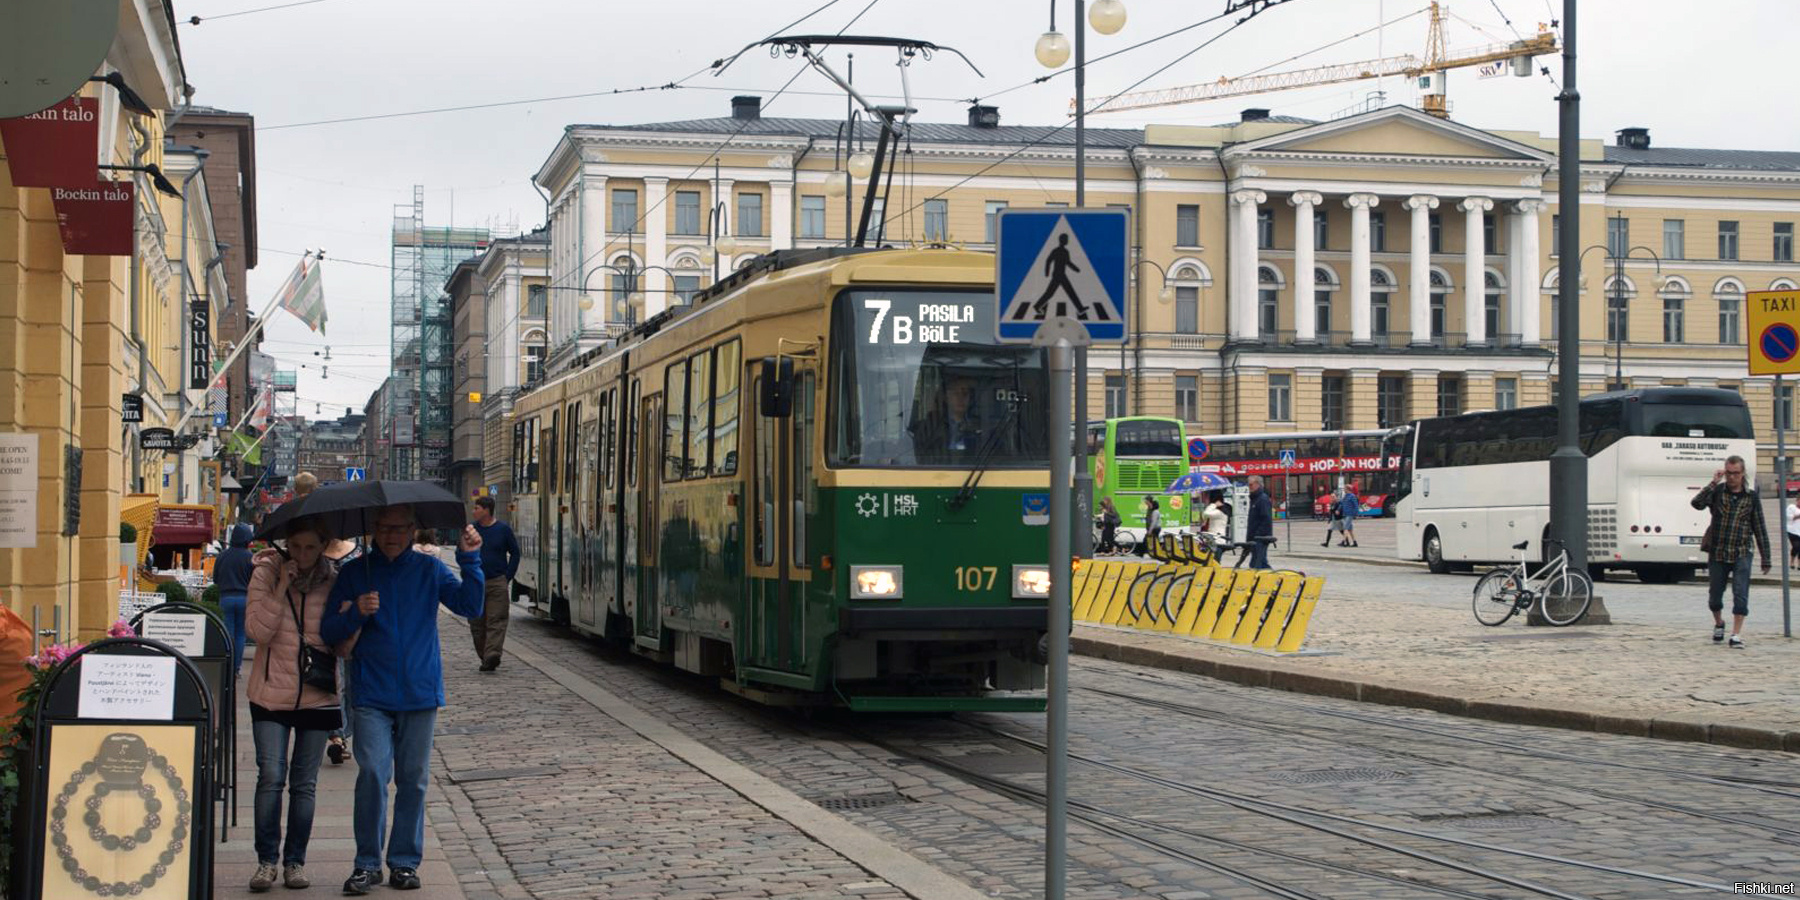 Не знал что в Каире были такие же трамваи, какие сейчас в Финляндии, по Хельсинки до сих пор ездят. Даже цвета одинаковые.  :)